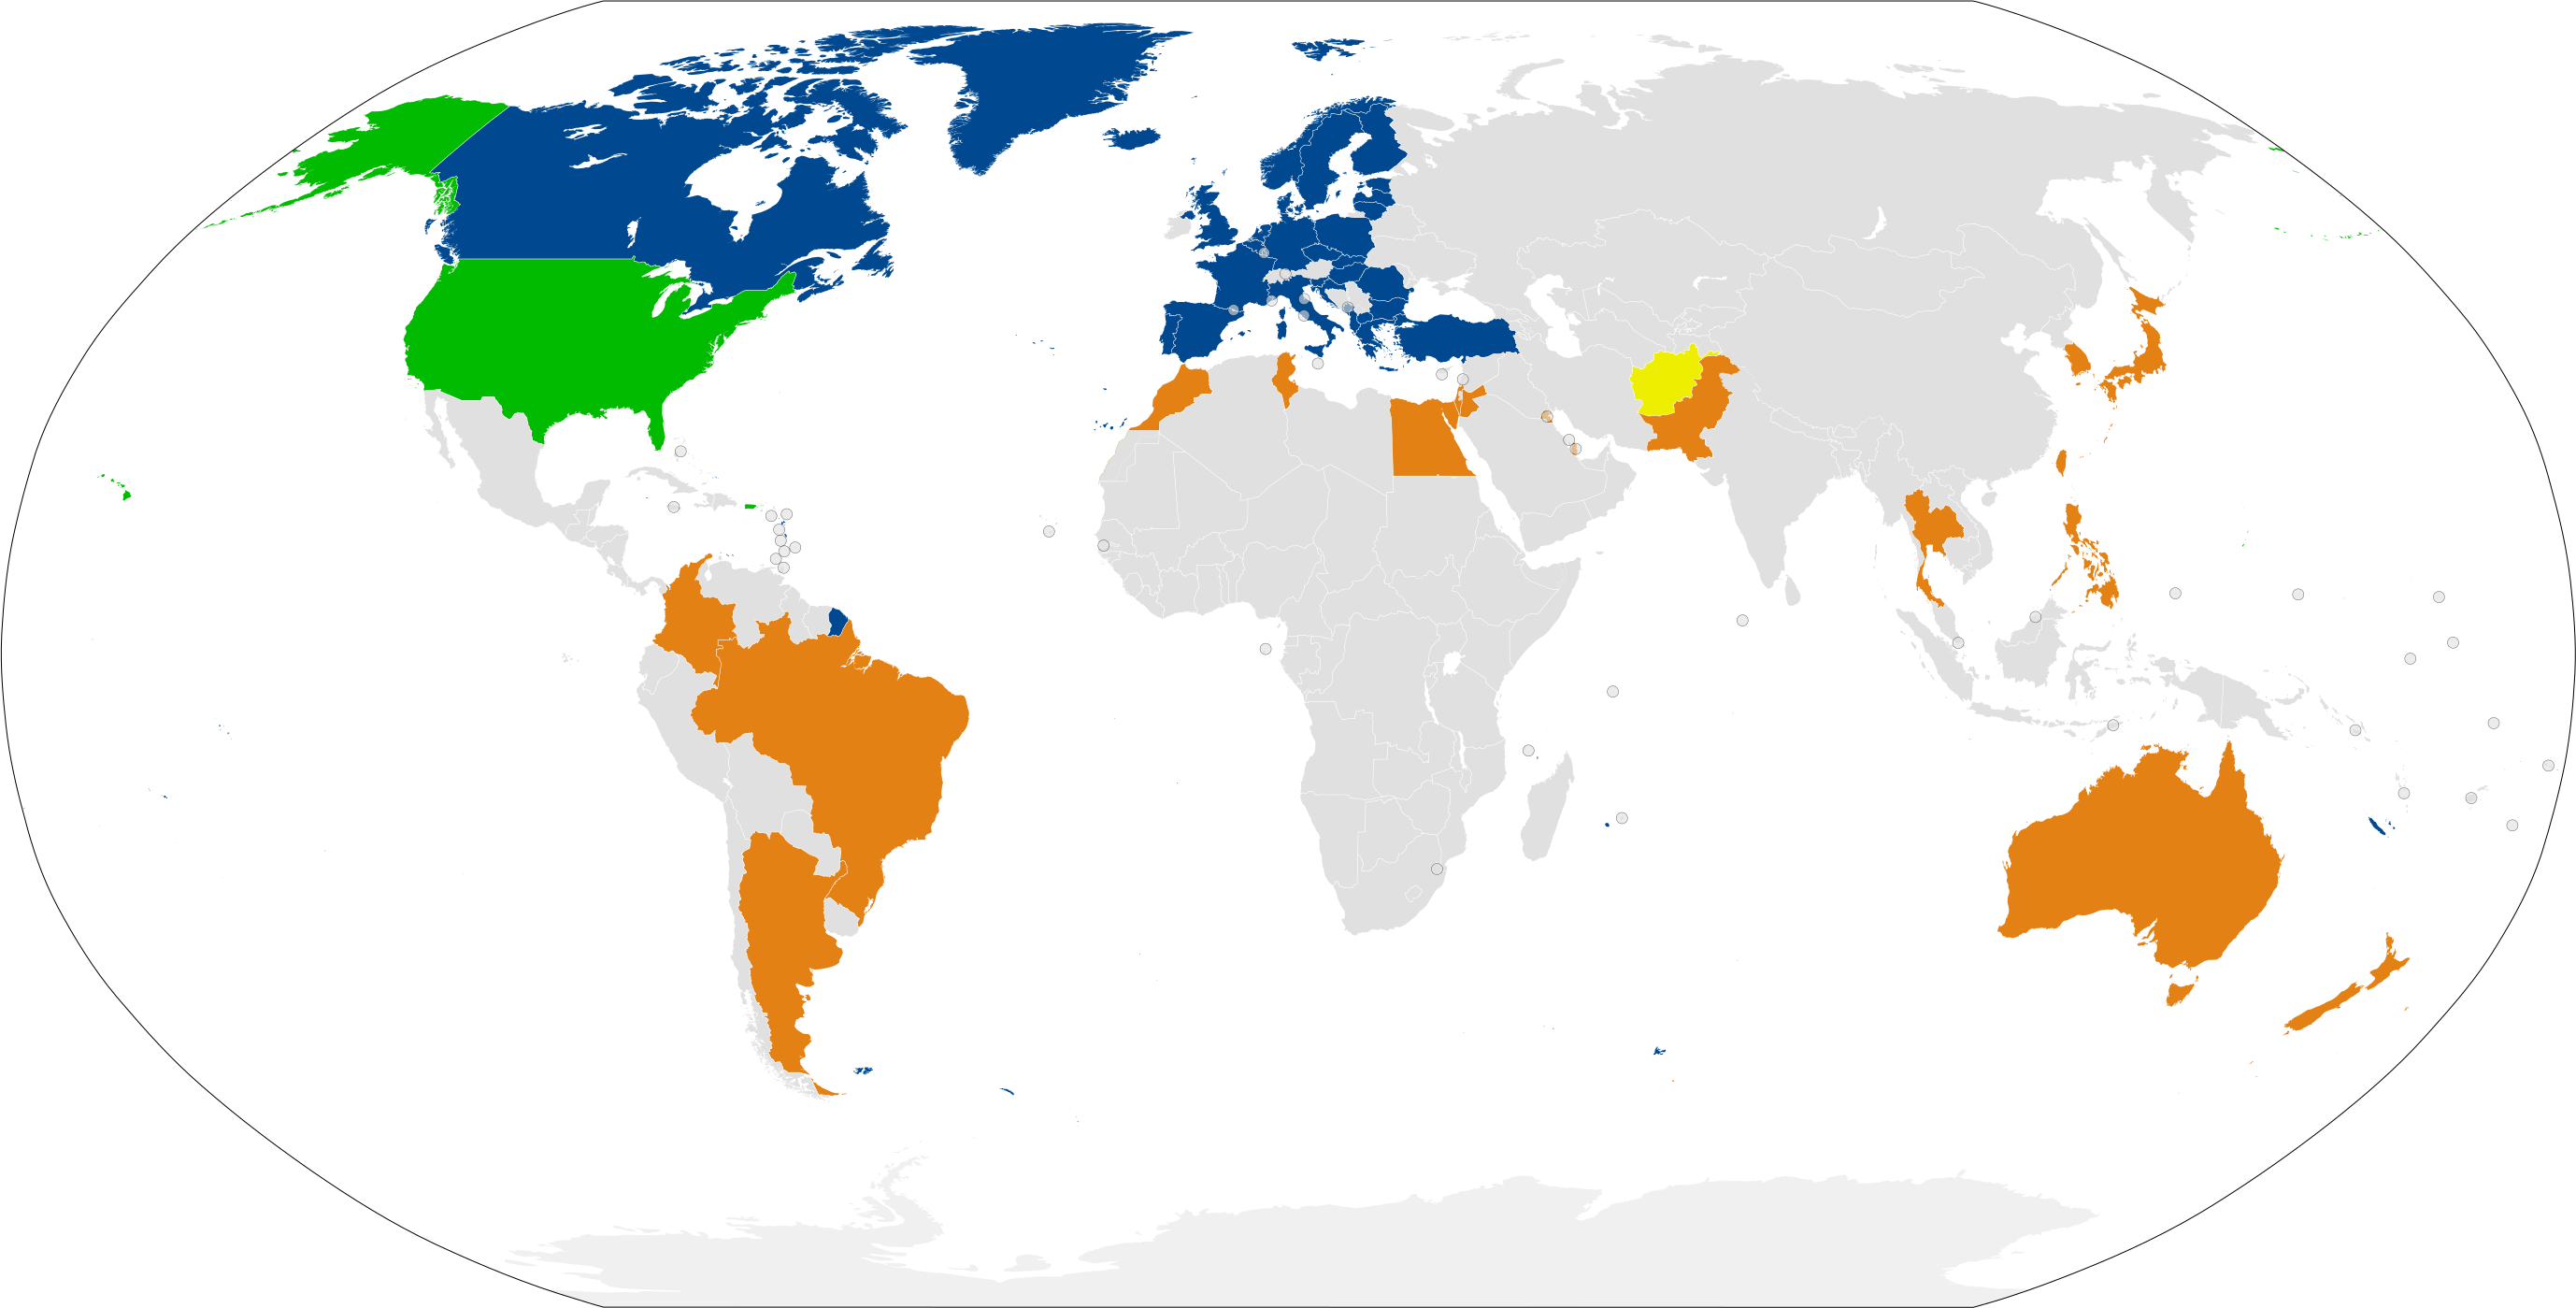 Unites States in green Major Non-NATO ally in orange